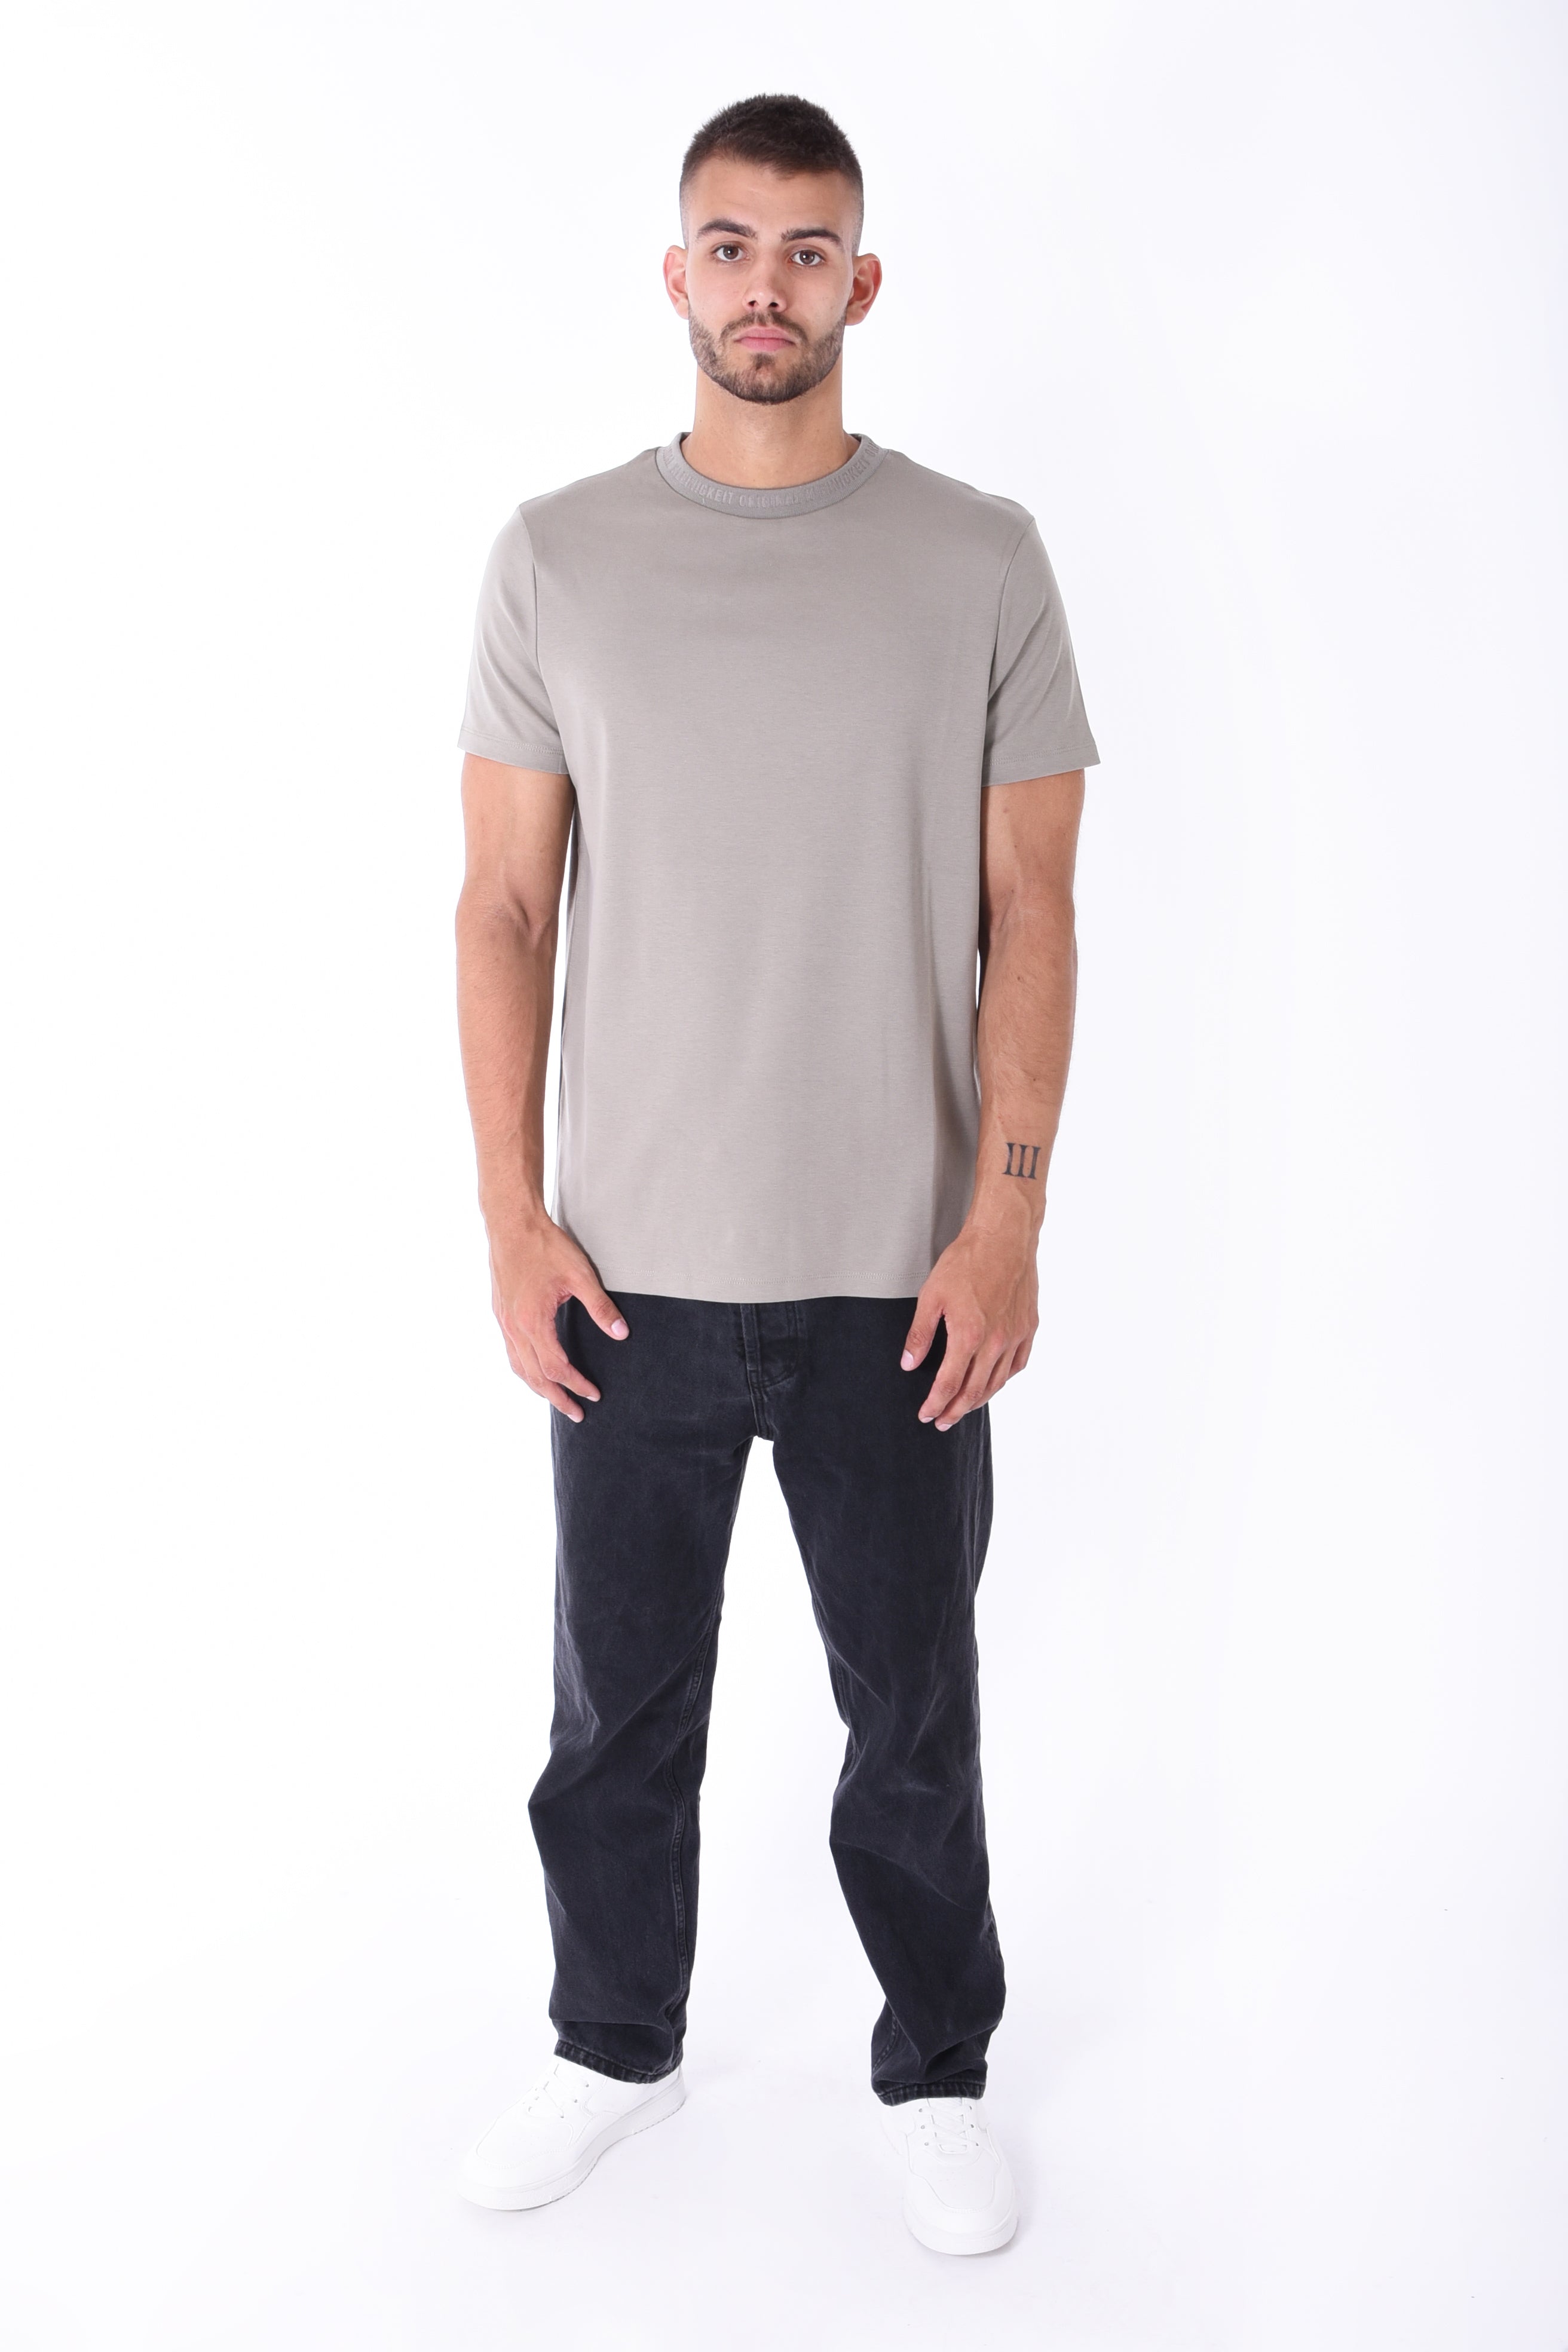 Kleinigkeit | T-Shirt Roundcut "Unterragendes Shirt" | olive